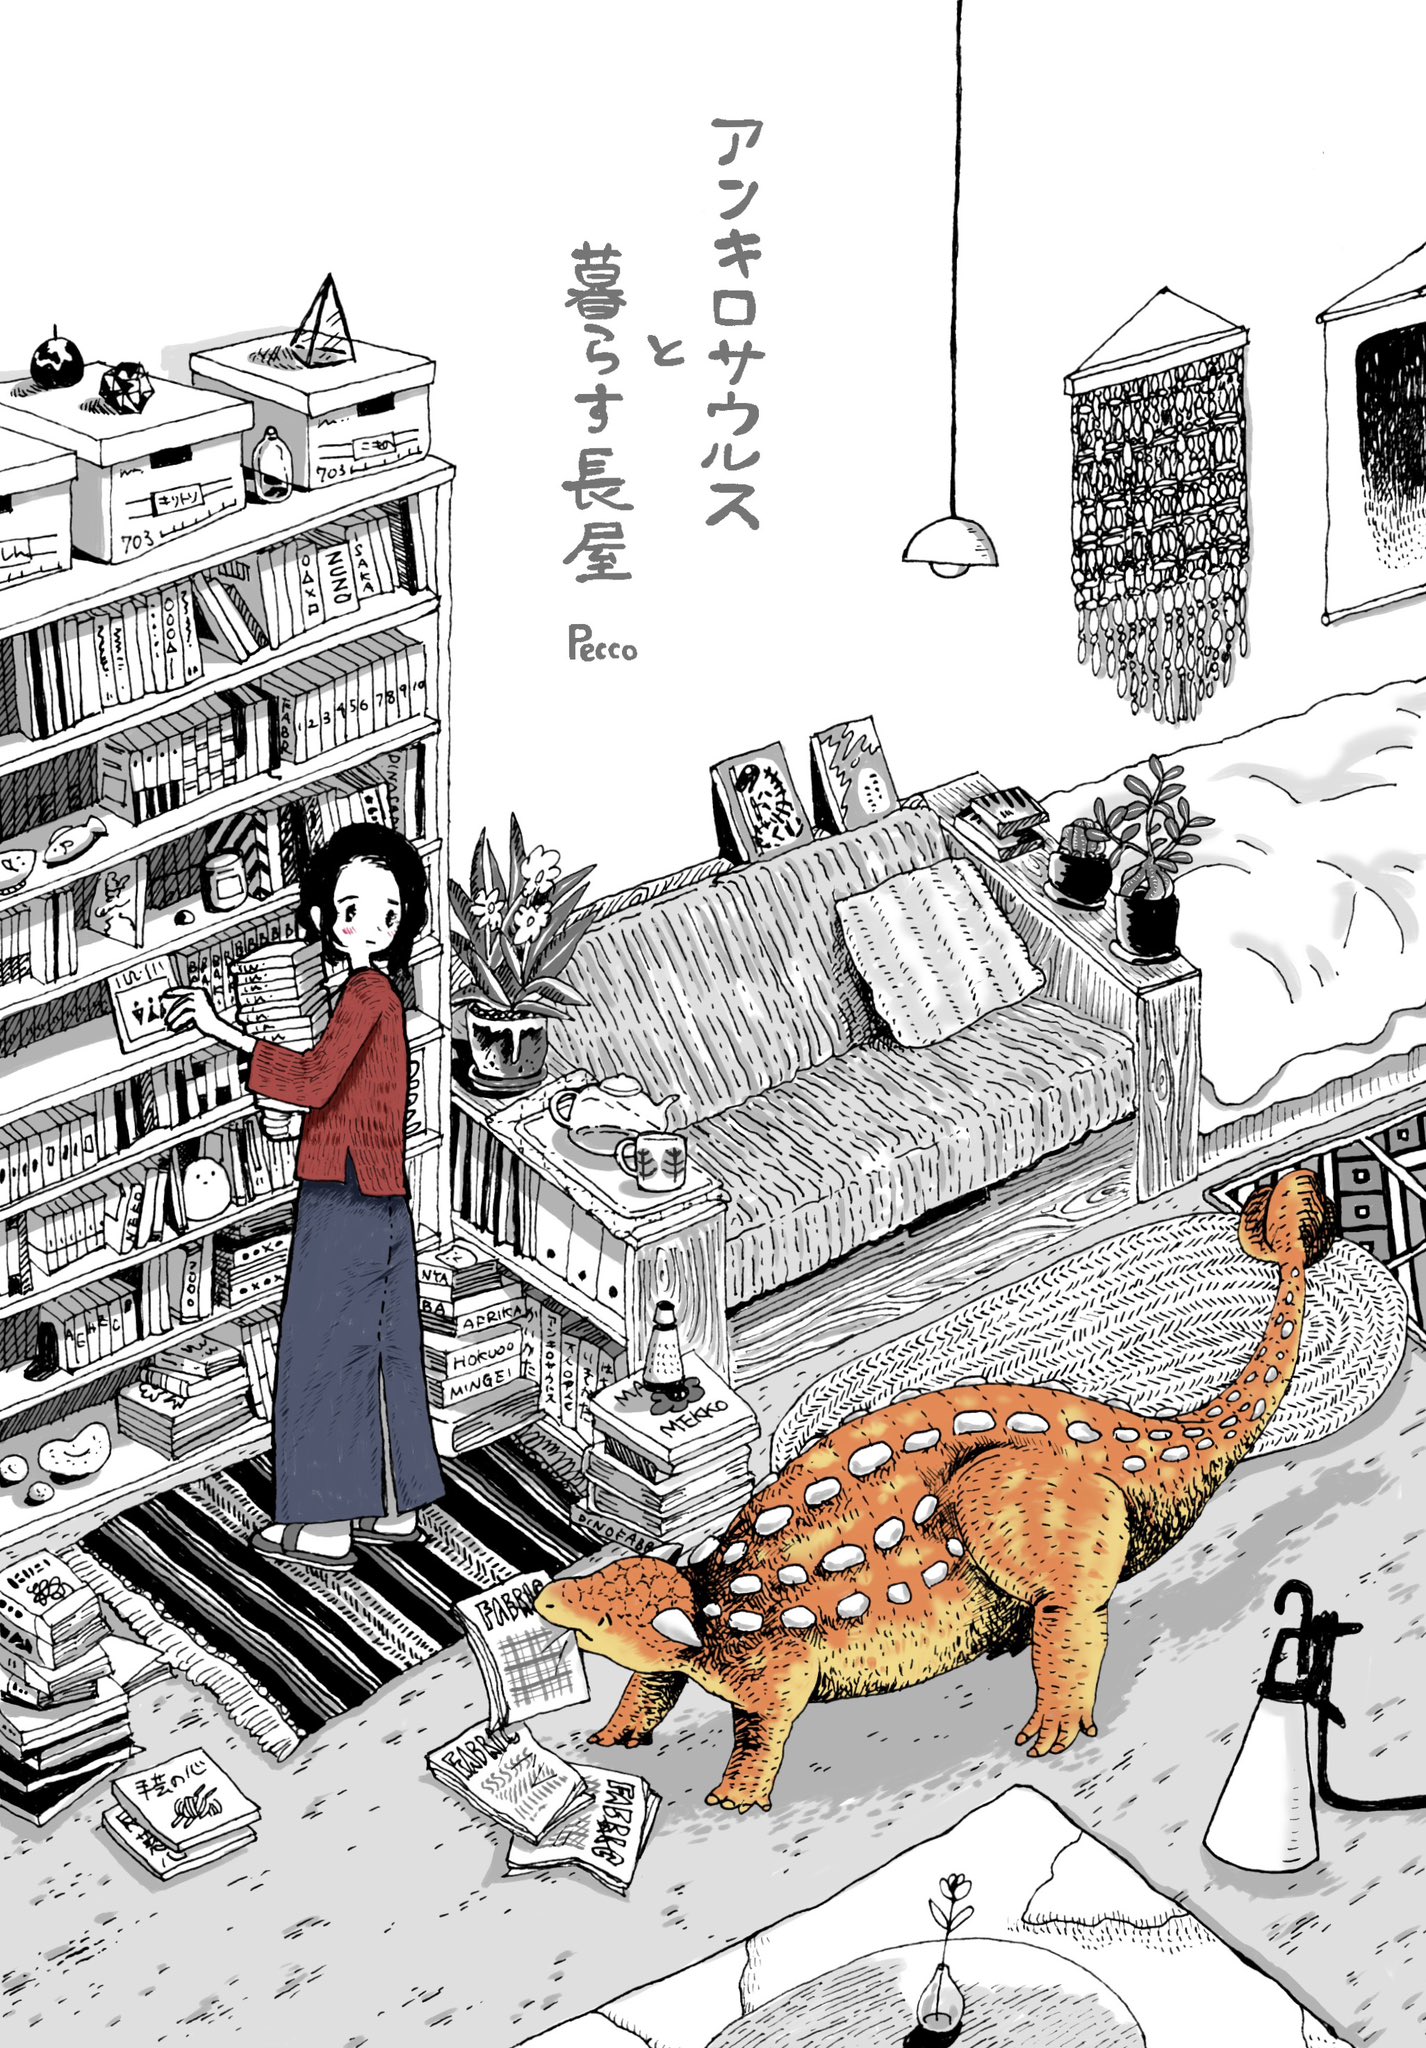 【漫画】アンキロサウルスと暮らす長屋の画像